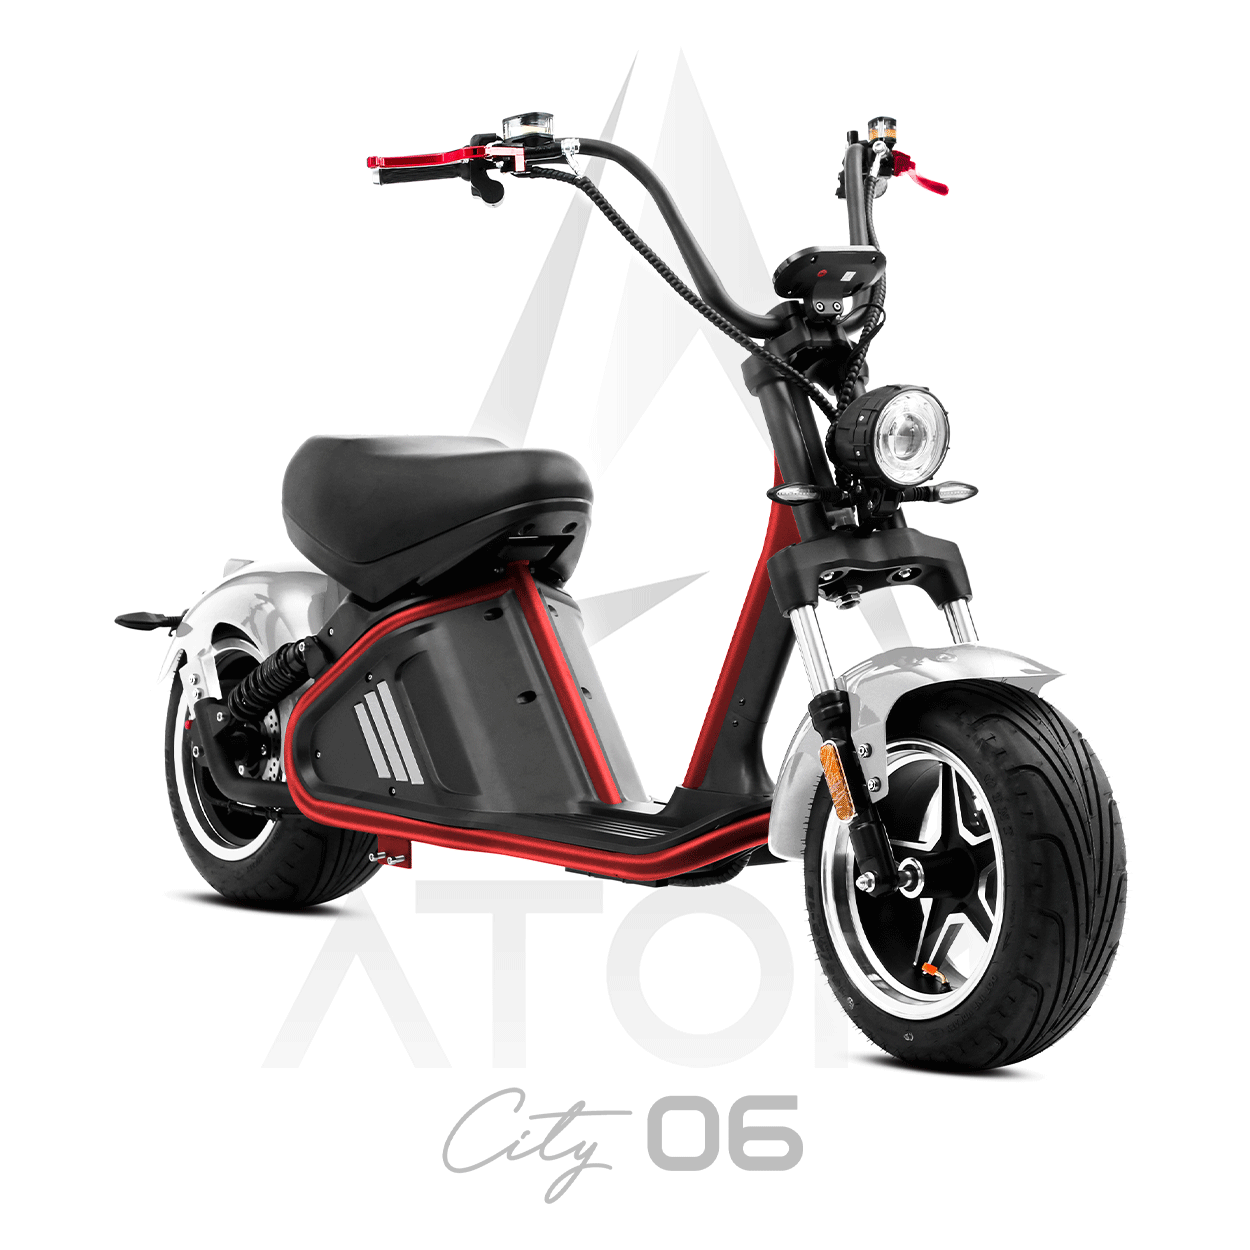 Scooter électrique, Atom City 06 | 3000 W | 50 cm³ - Atom Motors